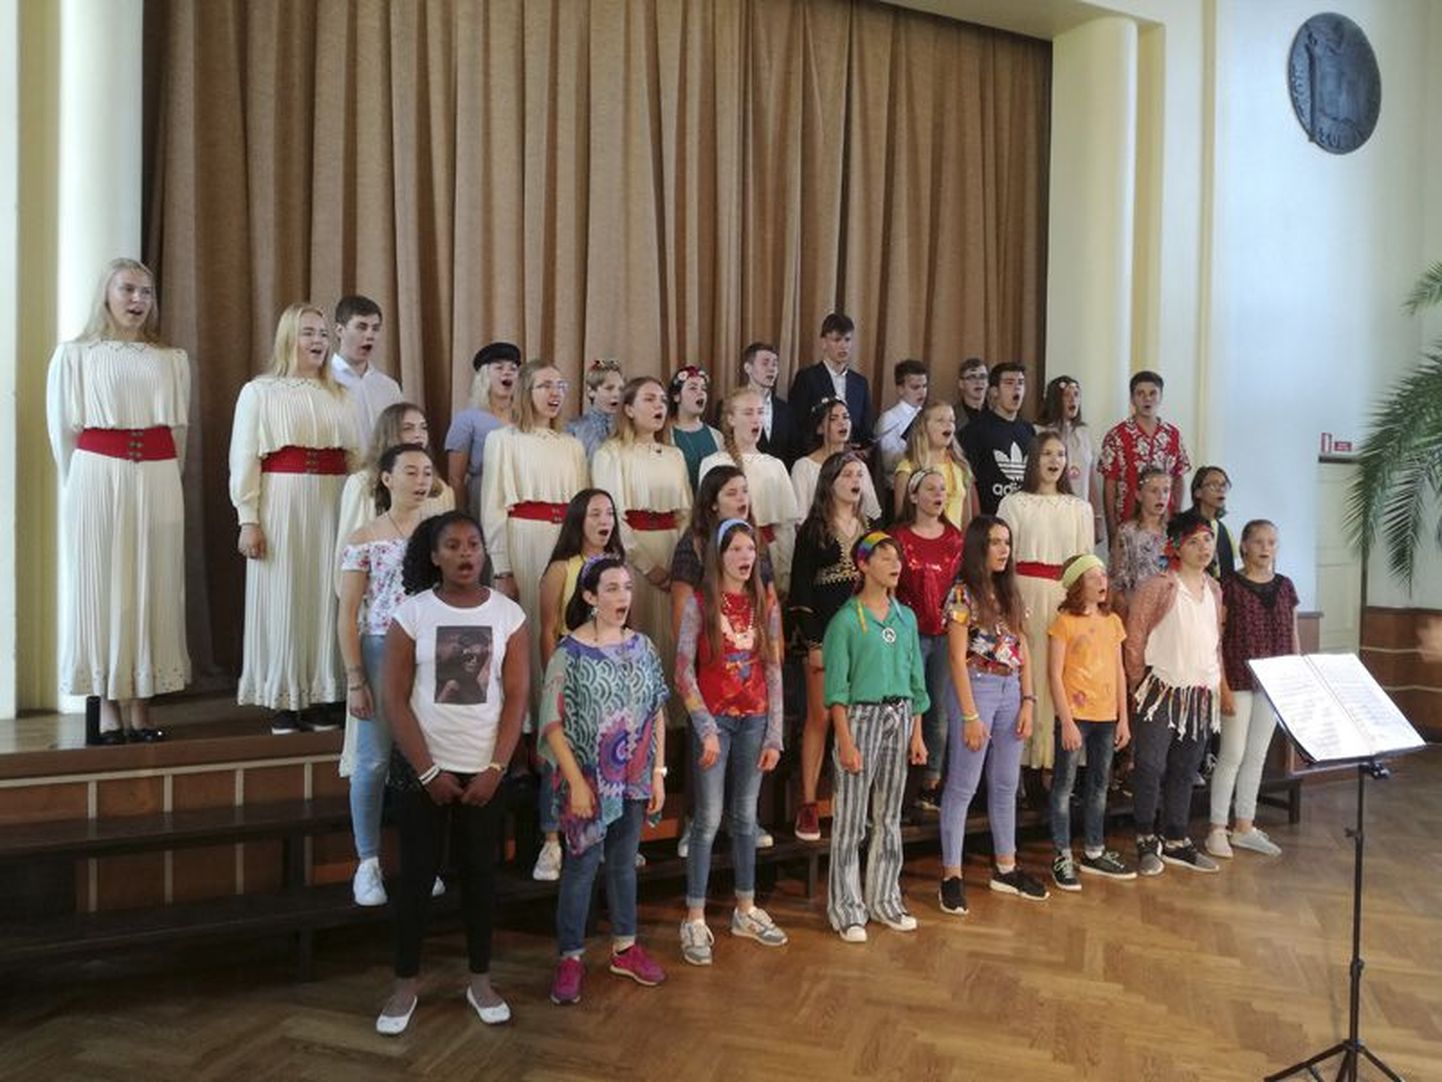 Rakvere gümnaasiumi segakoor ja Thuiri linna noortekoor esitasid koos laulu “Kauges külas”.